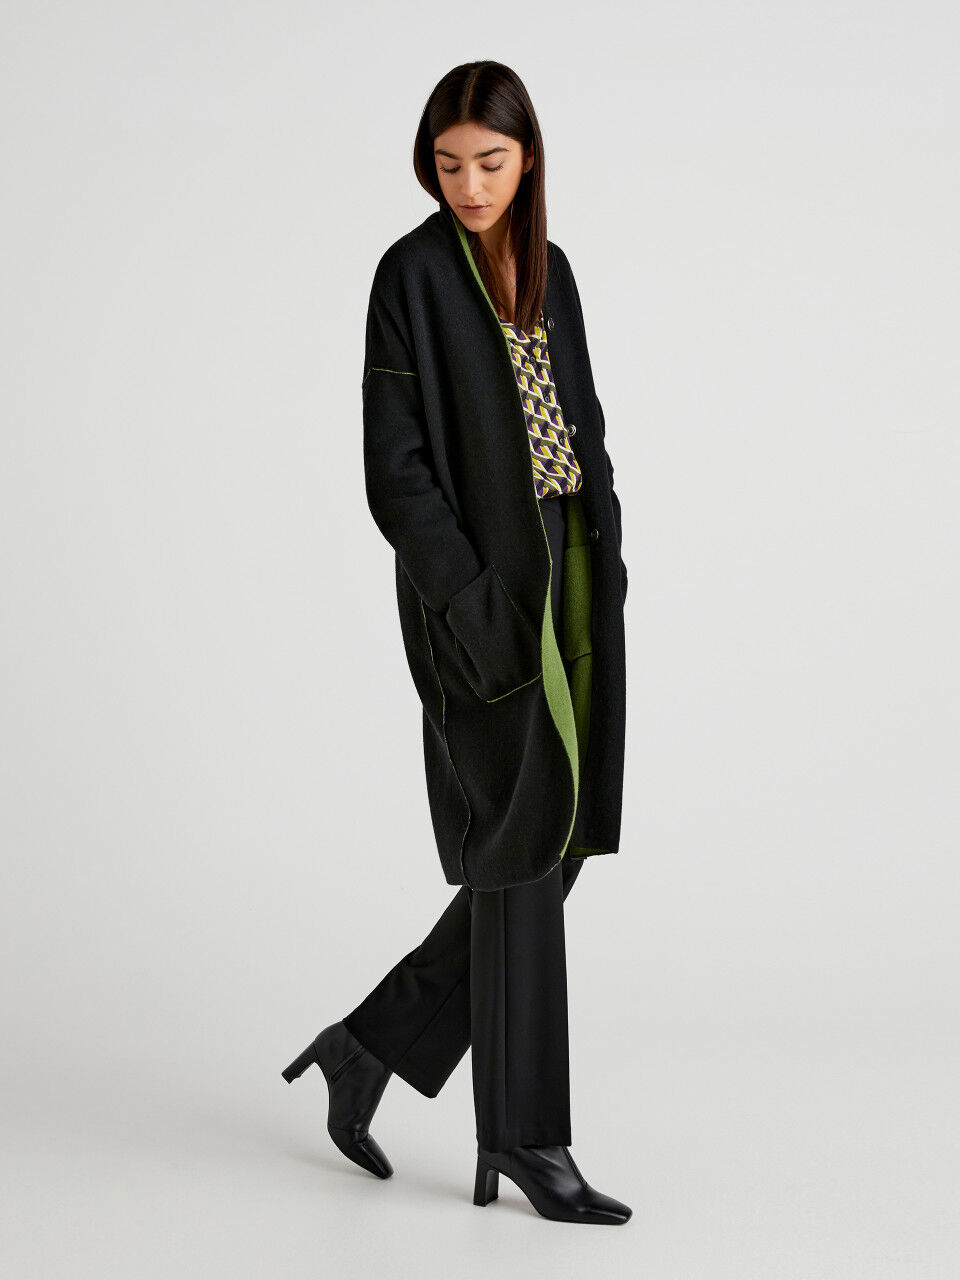 Femme Vêtements Vestes Blousons en cuir 13 % de réduction Veste Cuir Benetton en coloris Noir 